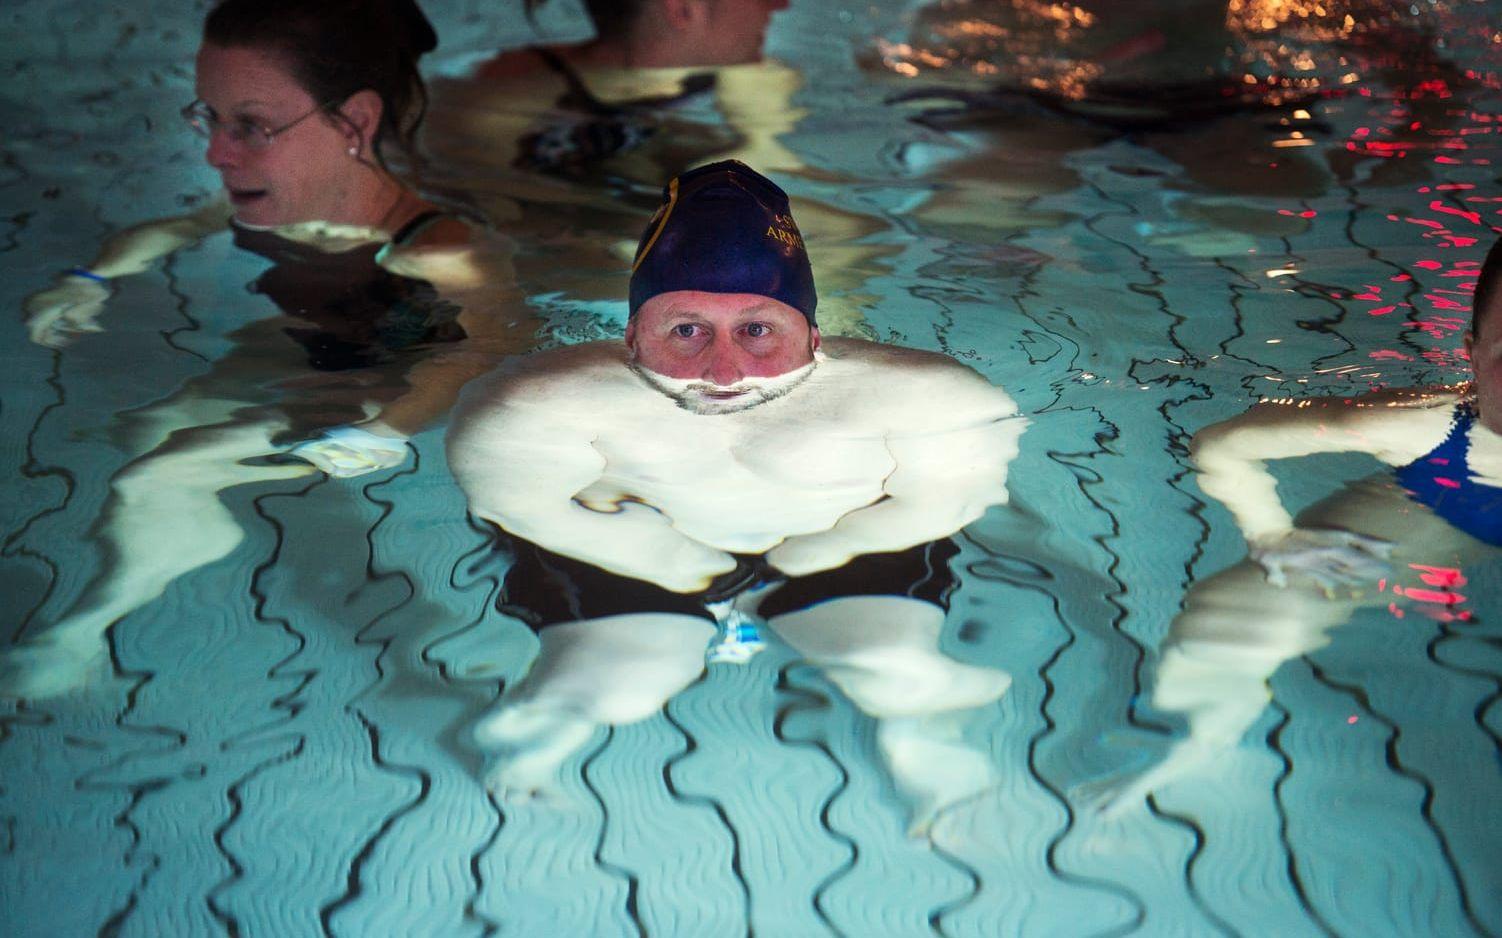 Mats Silver var en av omkring 30 deltagare som under kursen Gilla vatten fick känna efter med hela kroppen hur vatten känns. Bild: Roger Larsson